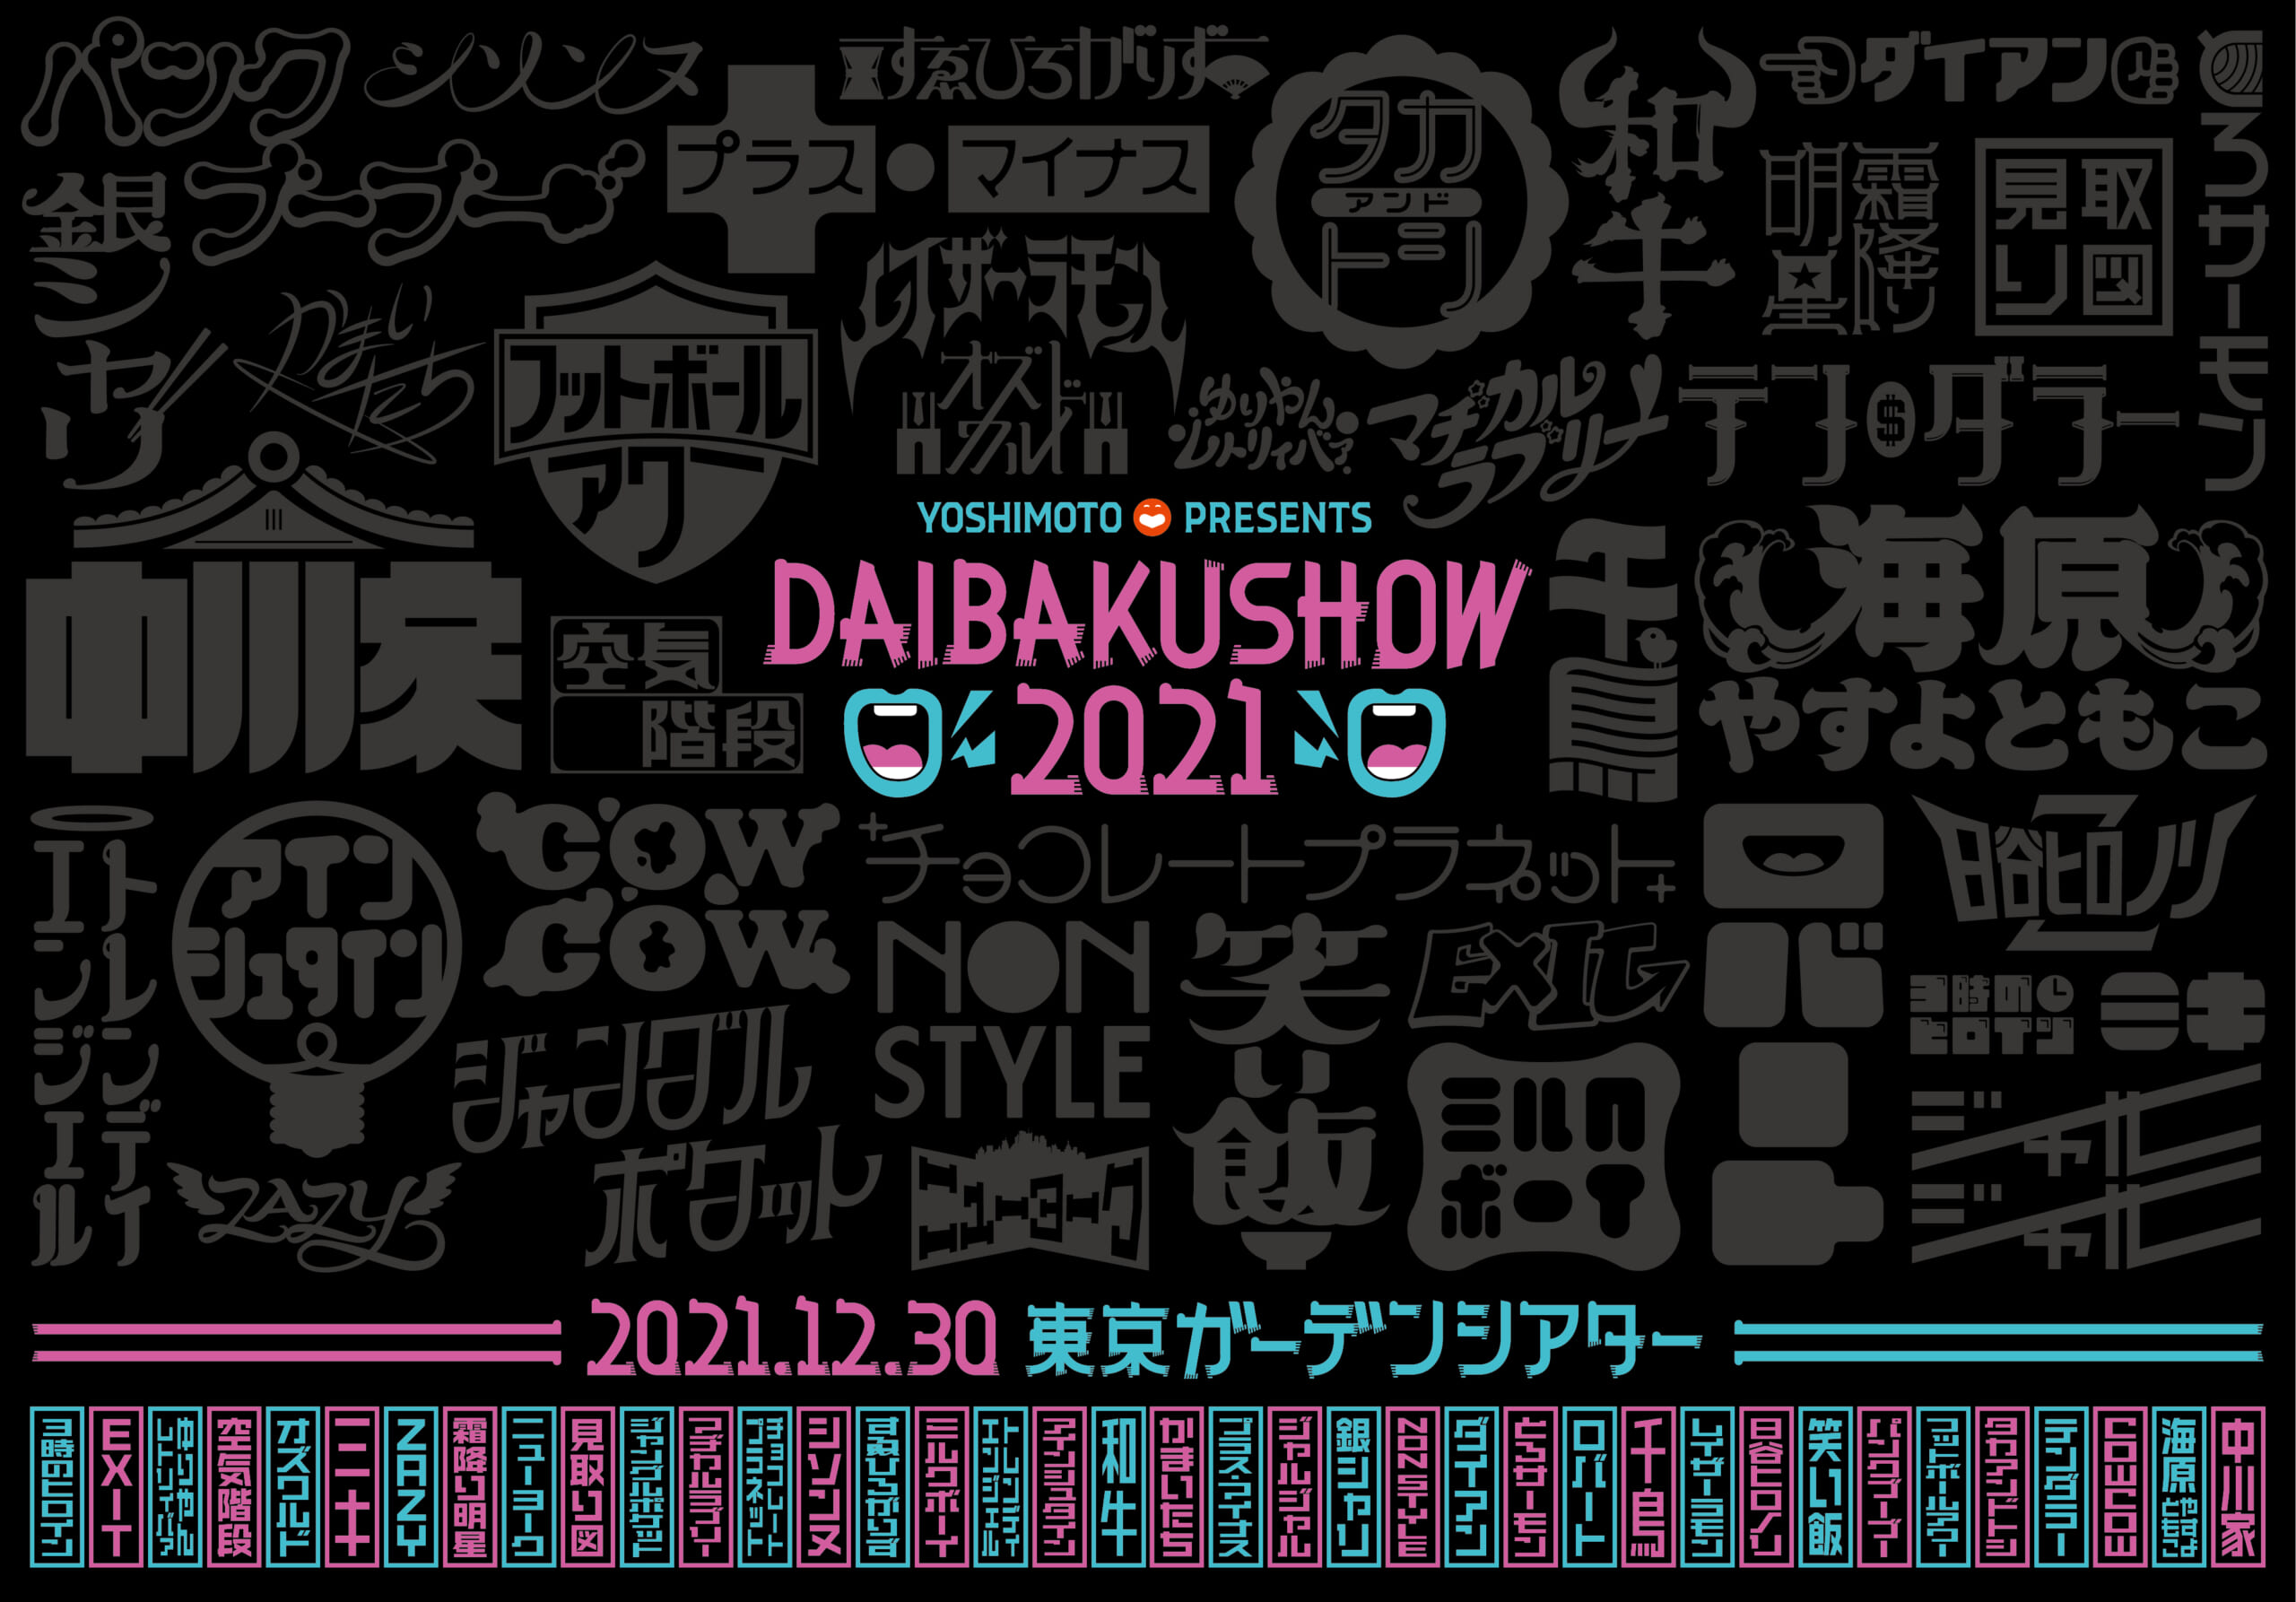 今年最大級のお笑いイベント! YOSHIMOTO presents DAIBAKUSHOW 2021 開催決定!